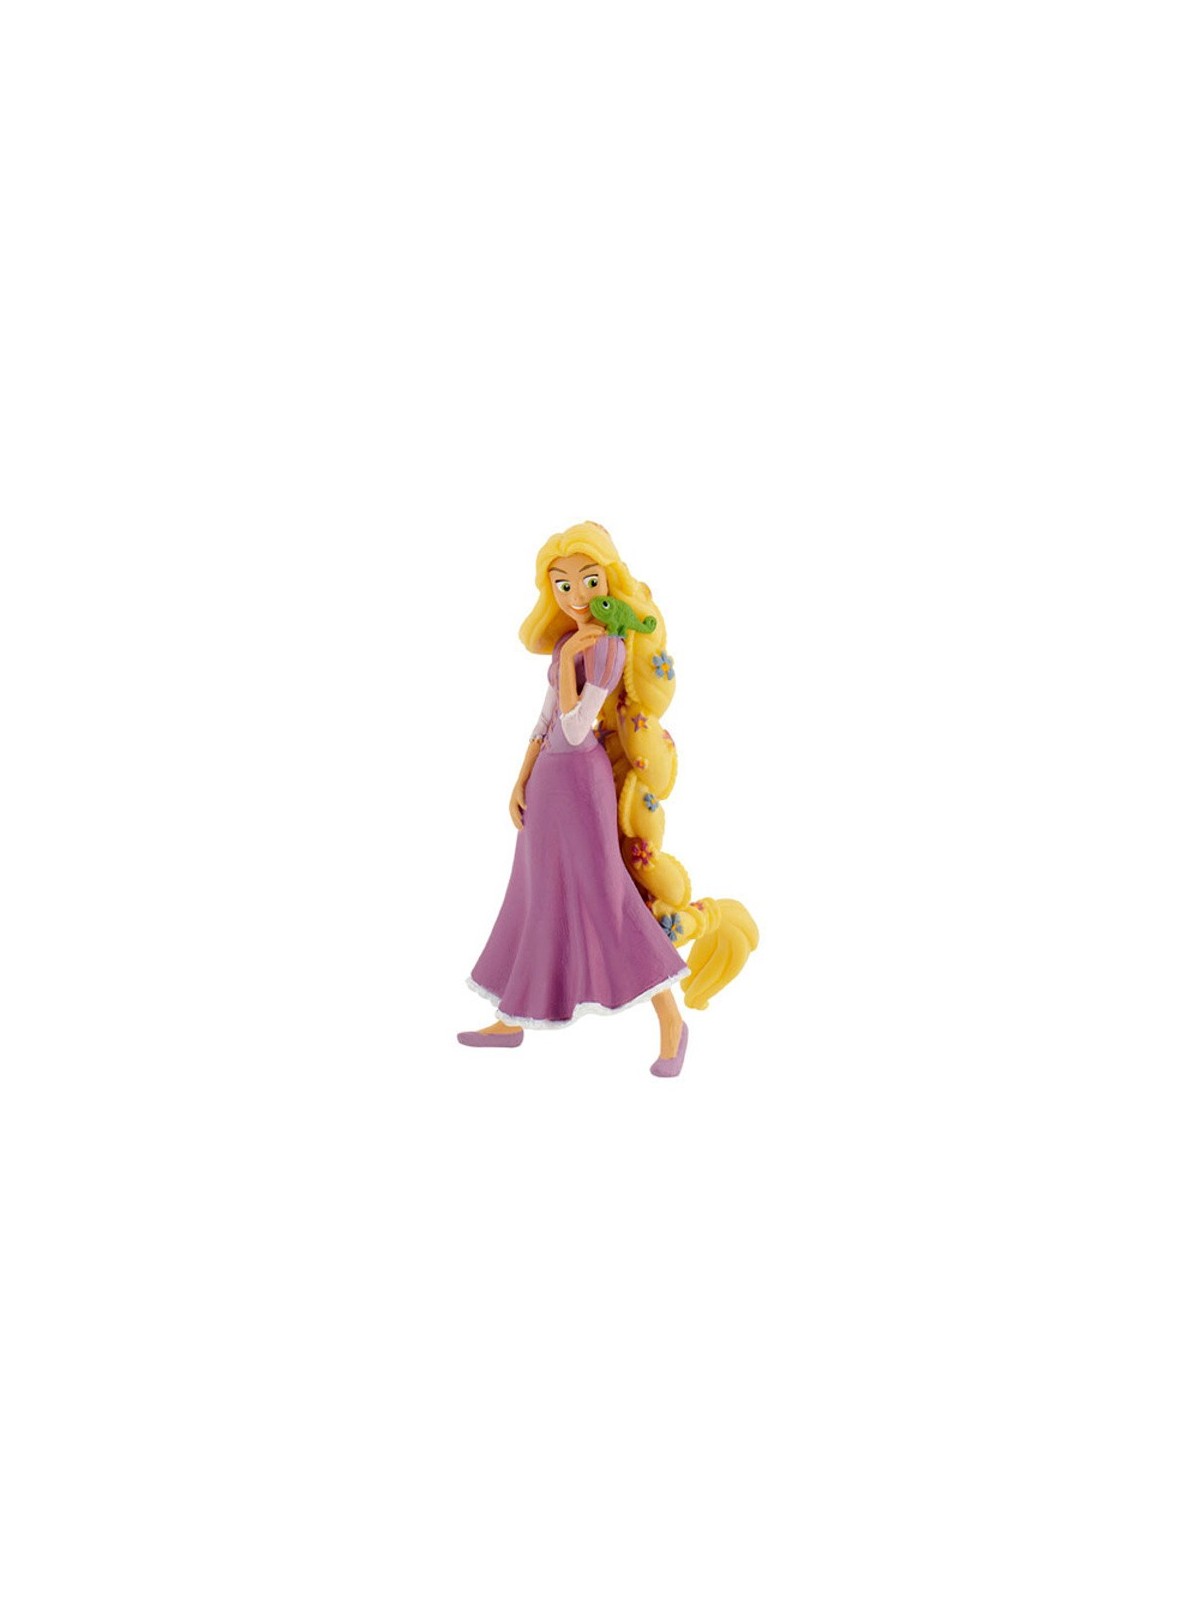 Dekorative Figur - Disney Figure Princess - Rapunzel